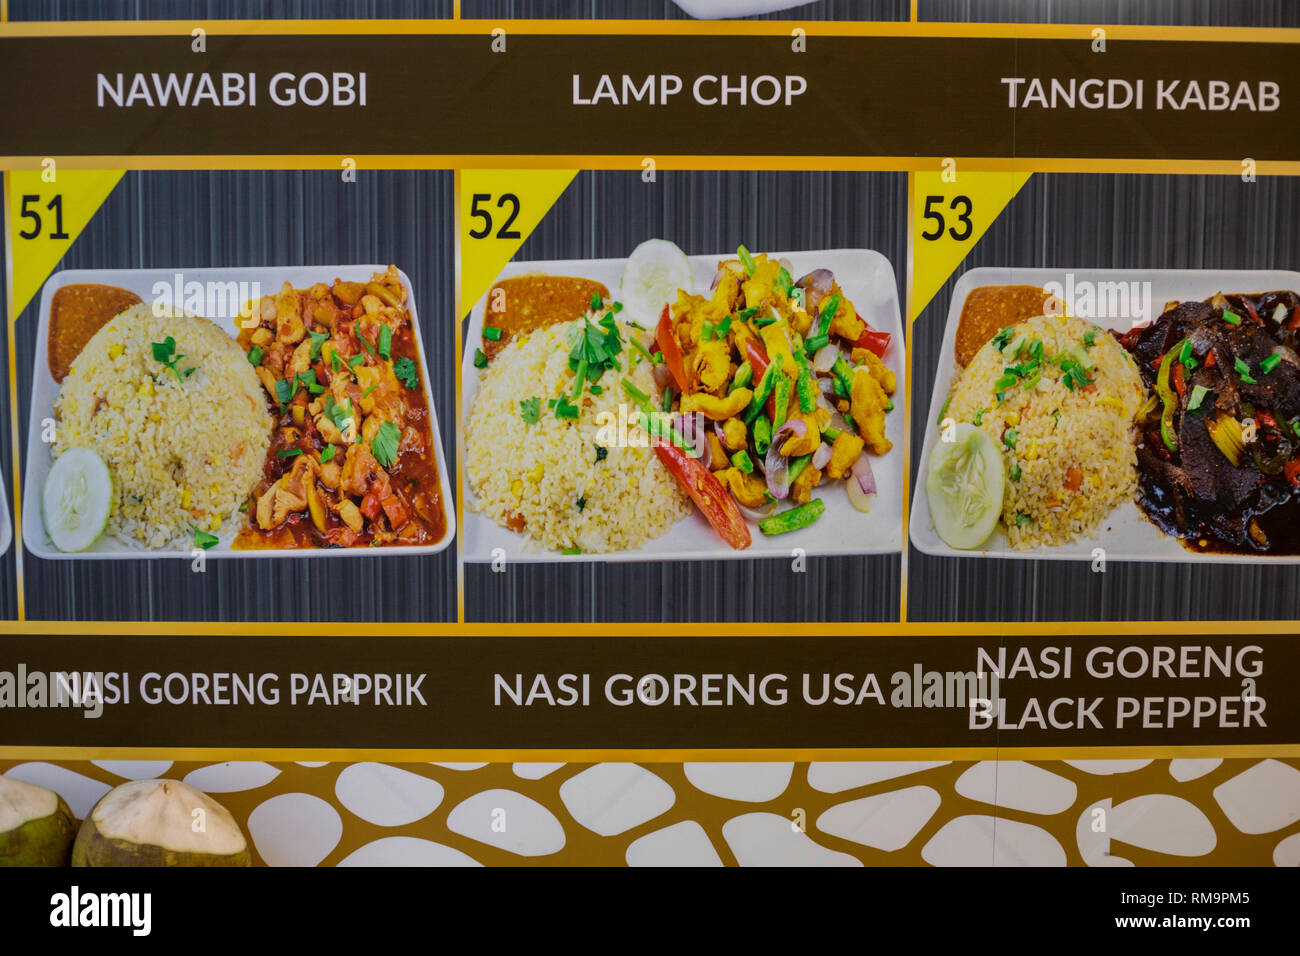 Restaurant Speisekarte mit Nasi Goreng USA, gebratenen Reis weniger scharf als üblich. Singapur. Stockfoto